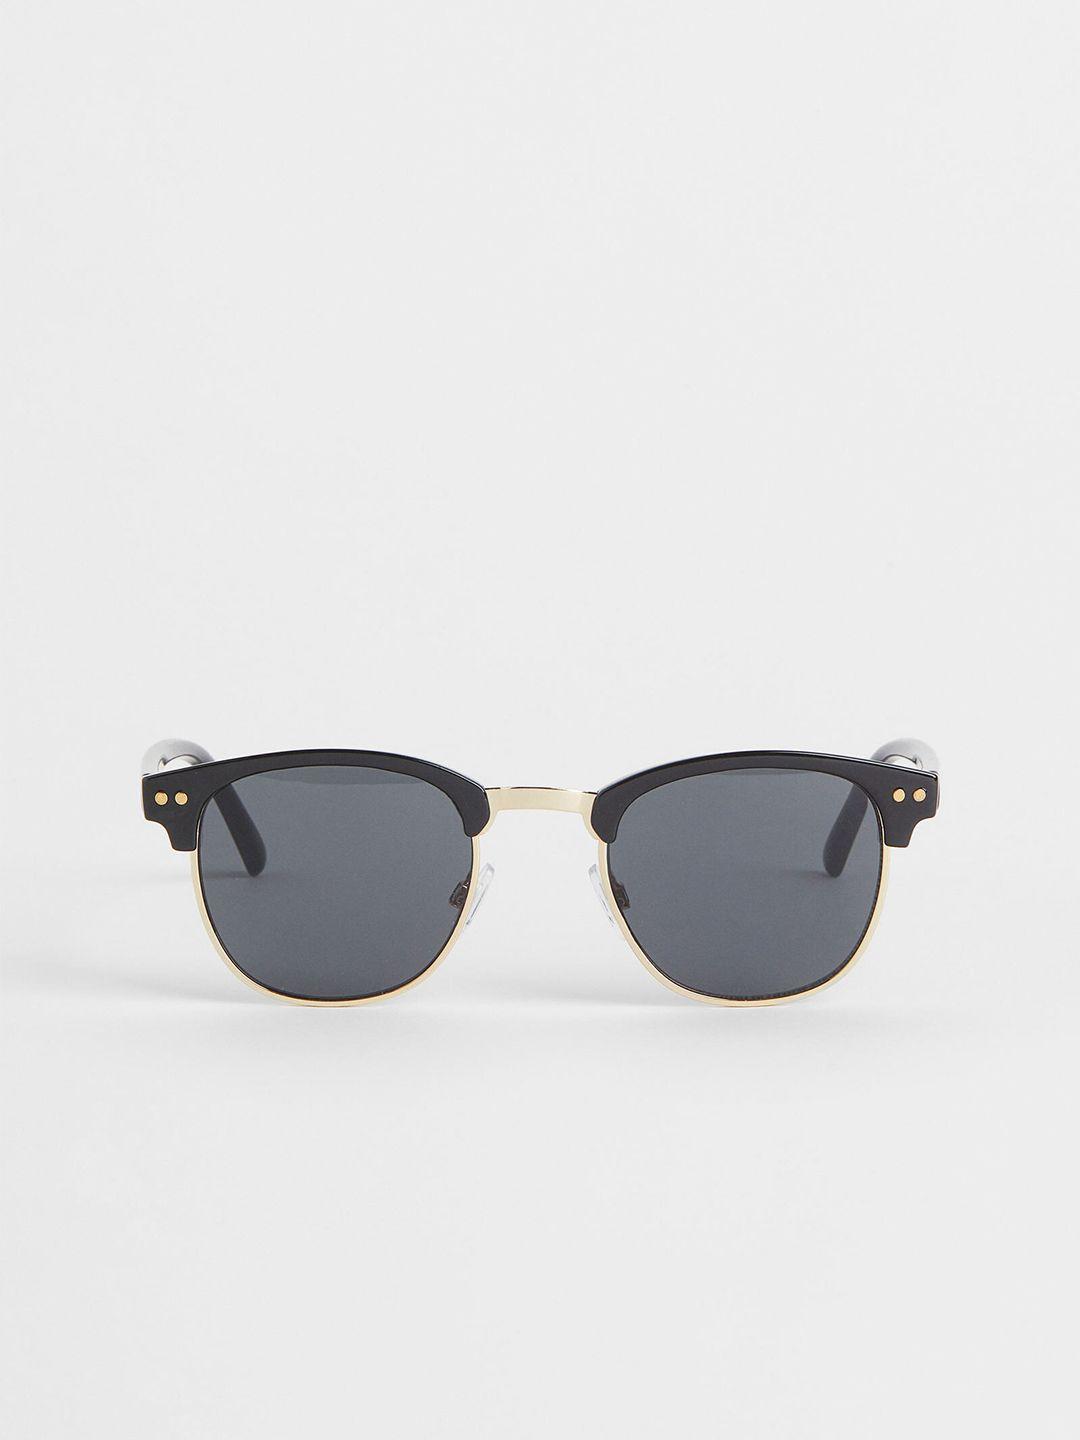 h&m-men-sunglasses-1046582002